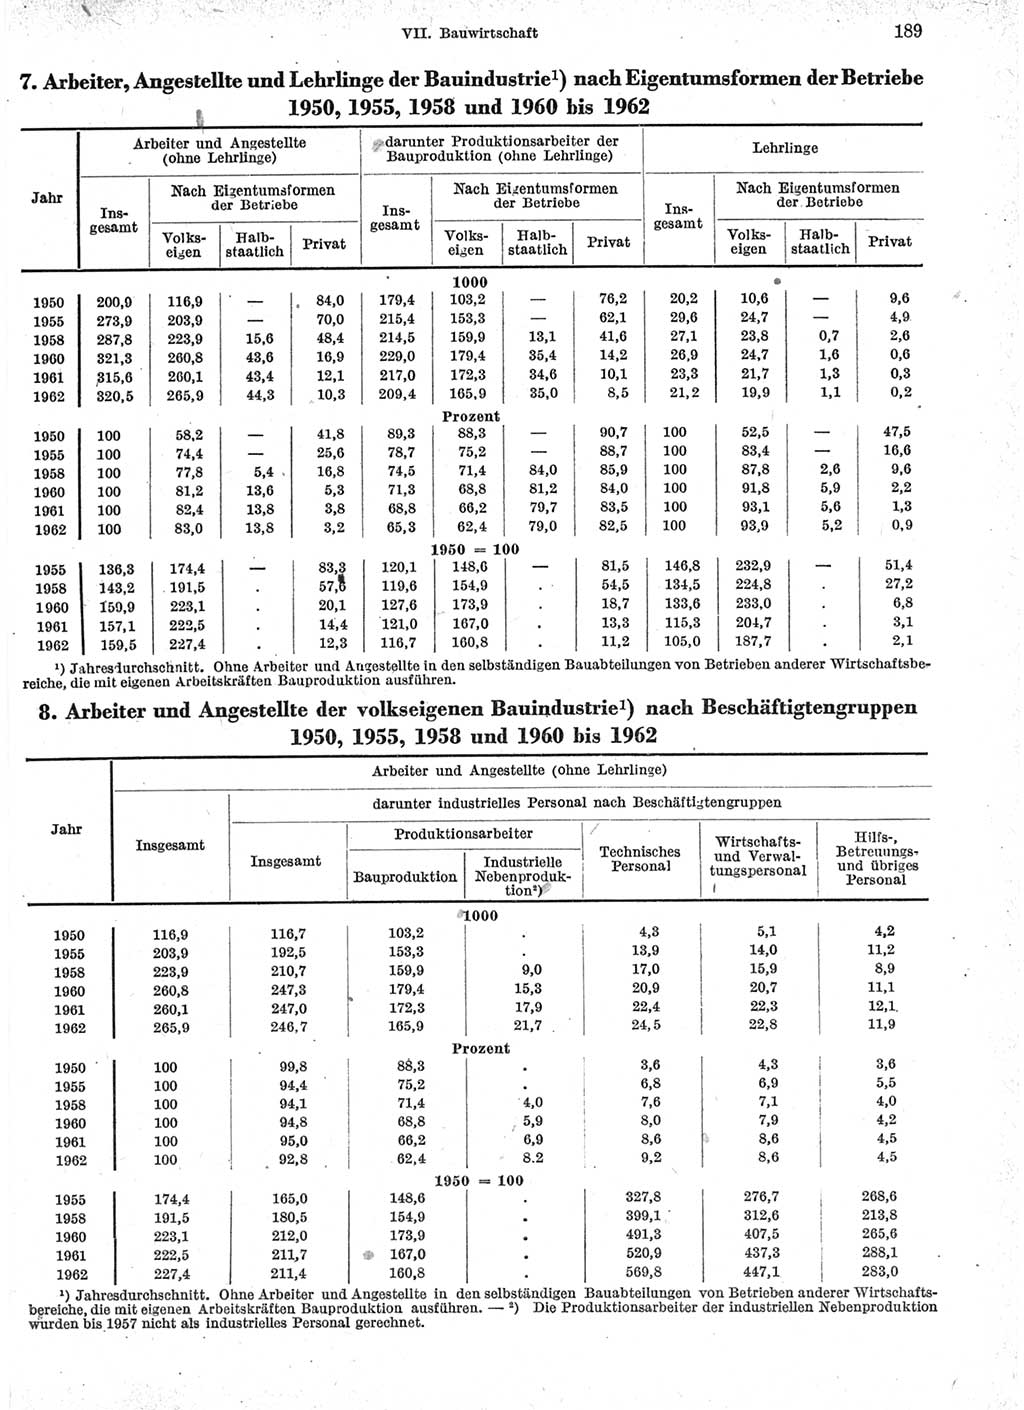 Statistisches Jahrbuch der Deutschen Demokratischen Republik (DDR) 1963, Seite 189 (Stat. Jb. DDR 1963, S. 189)